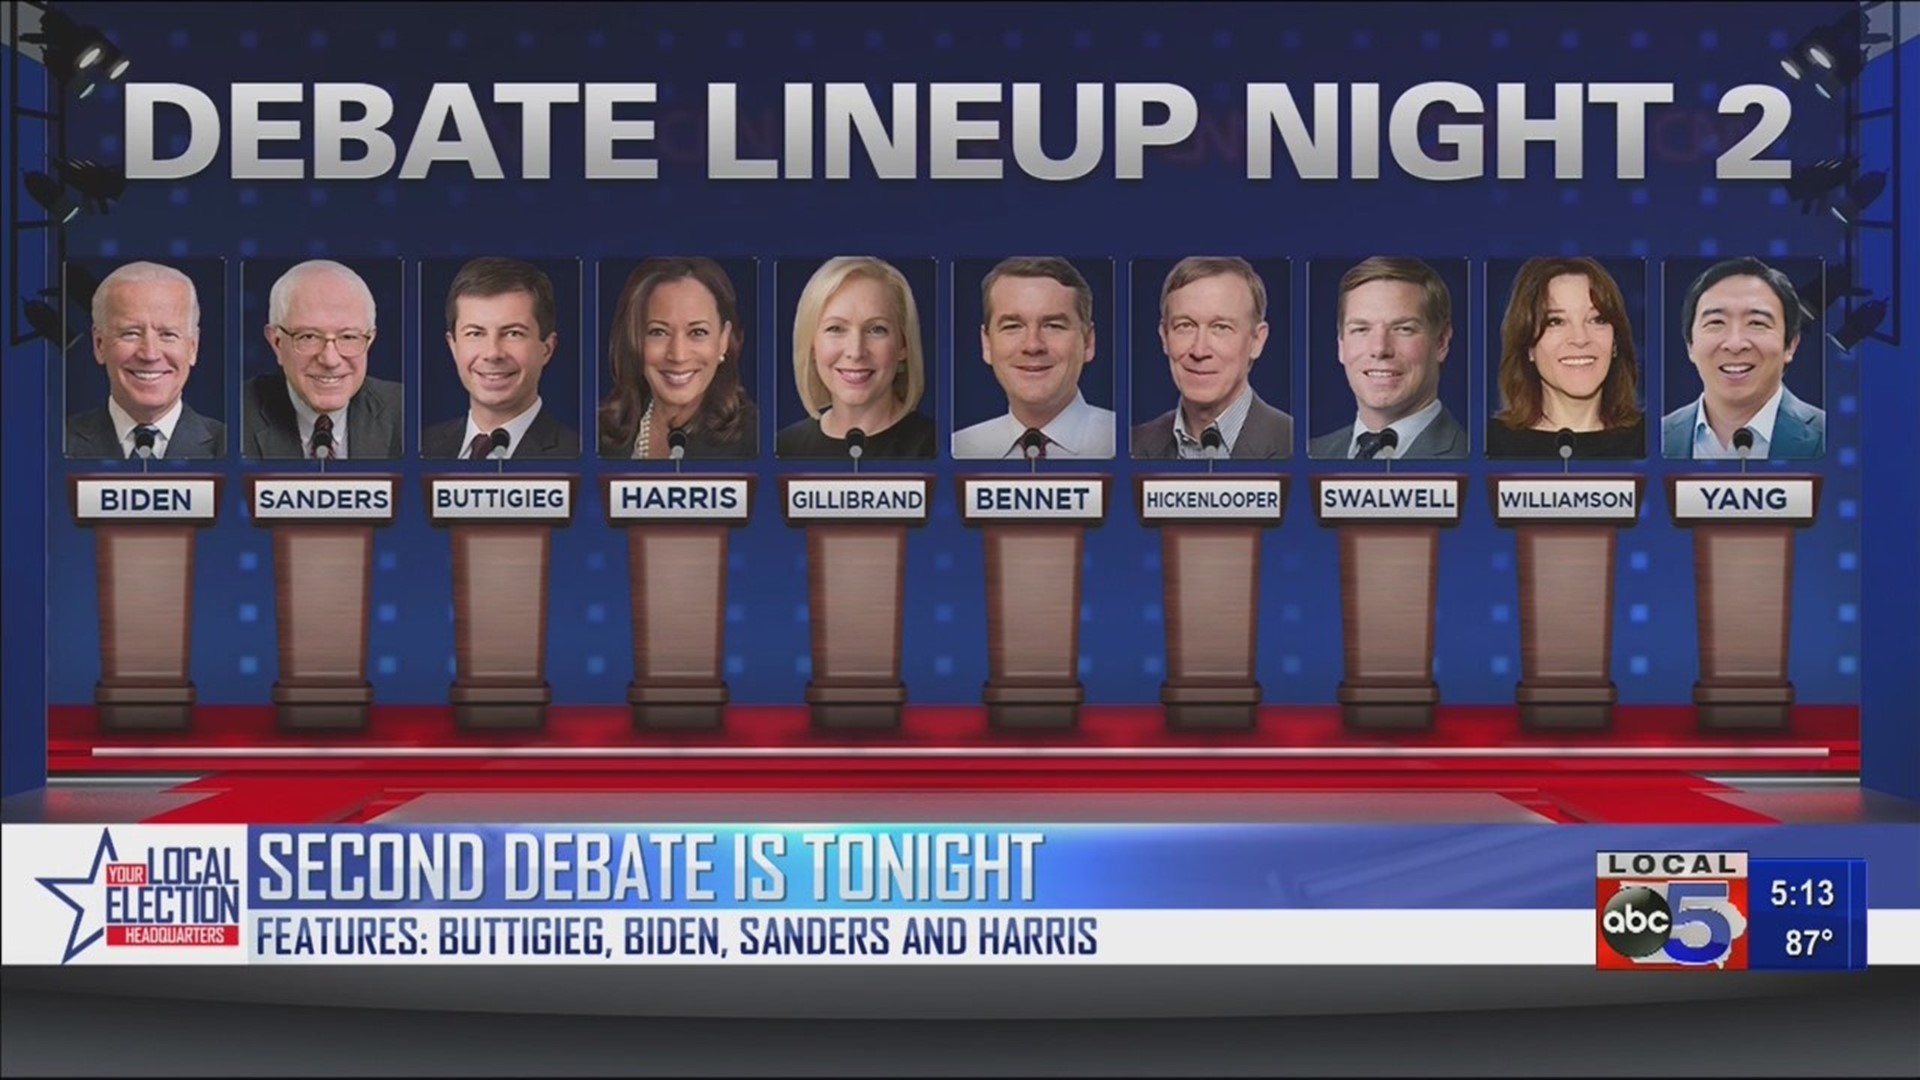 Democratic Debate #2 is tonight